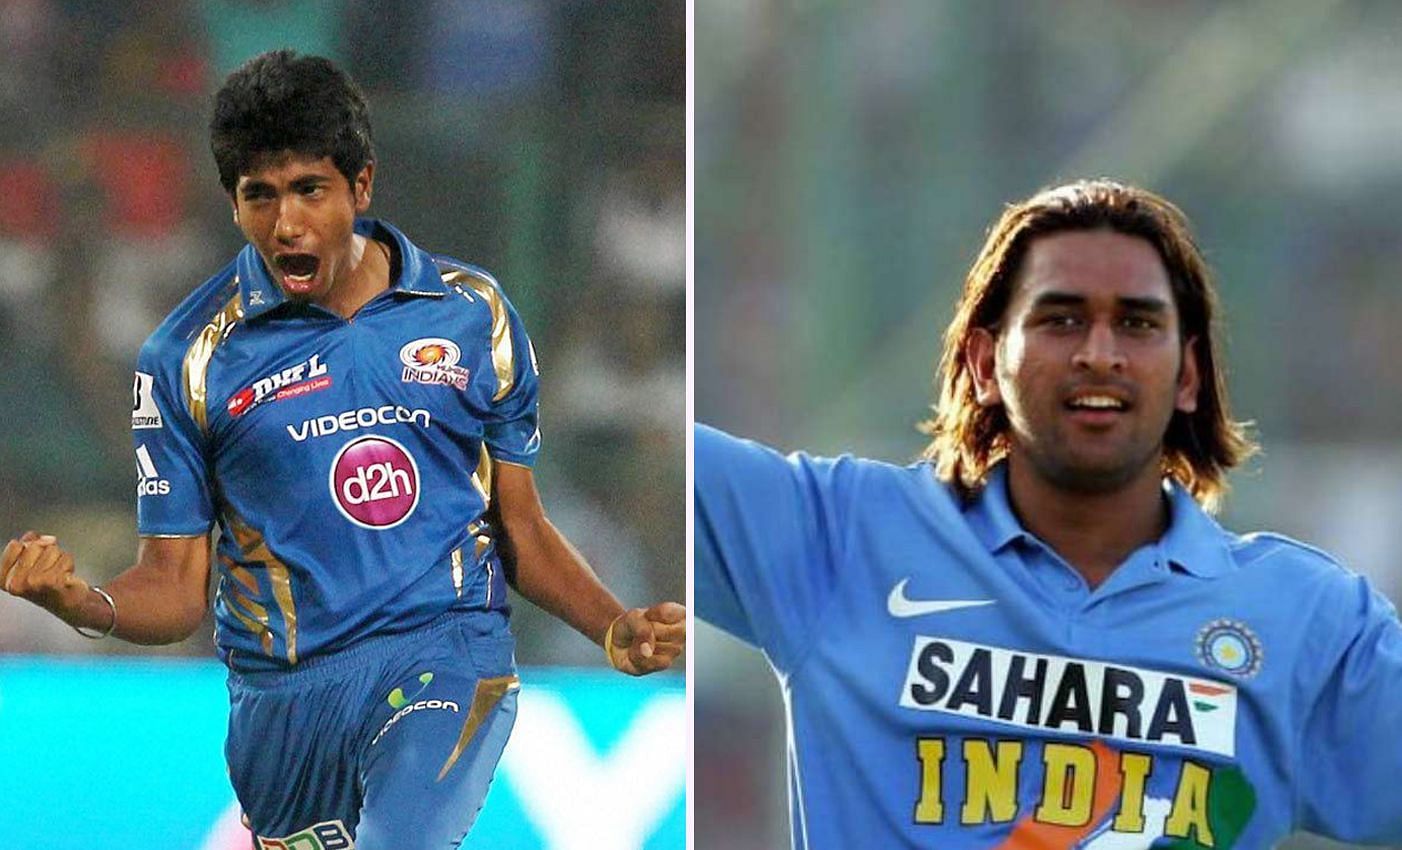 धोनी और बुमराह की गिनती भारत के दिग्गज खिलाड़ियों में होती है